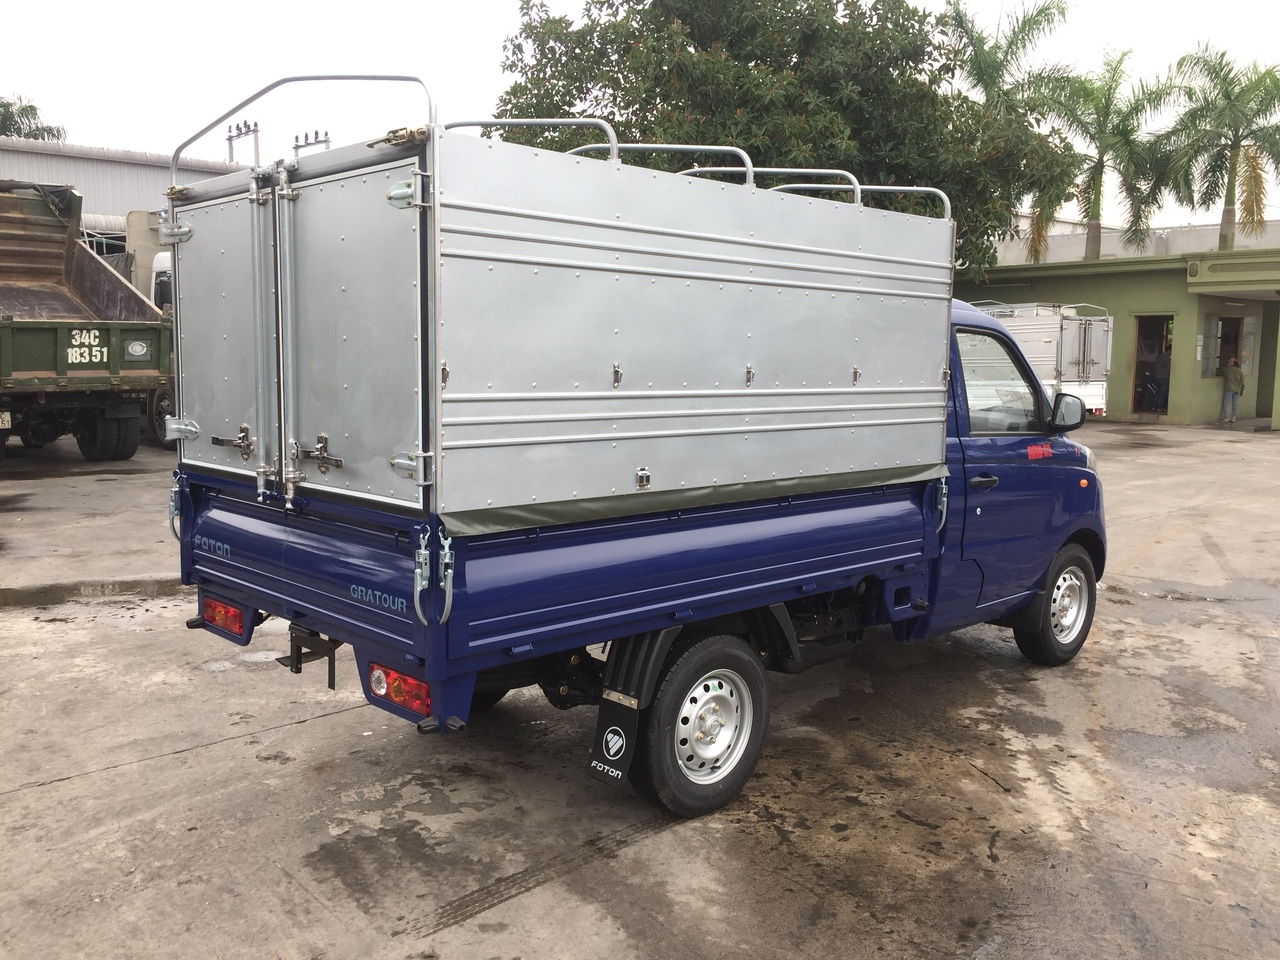 Xe tải Foton thùng mui bạt 995kg là dòng xe được đánh giá cao về chất lượng, hoạt động mạnh mẽ, vận hành bề bỉ và tiết kiệm nhiên liệu.